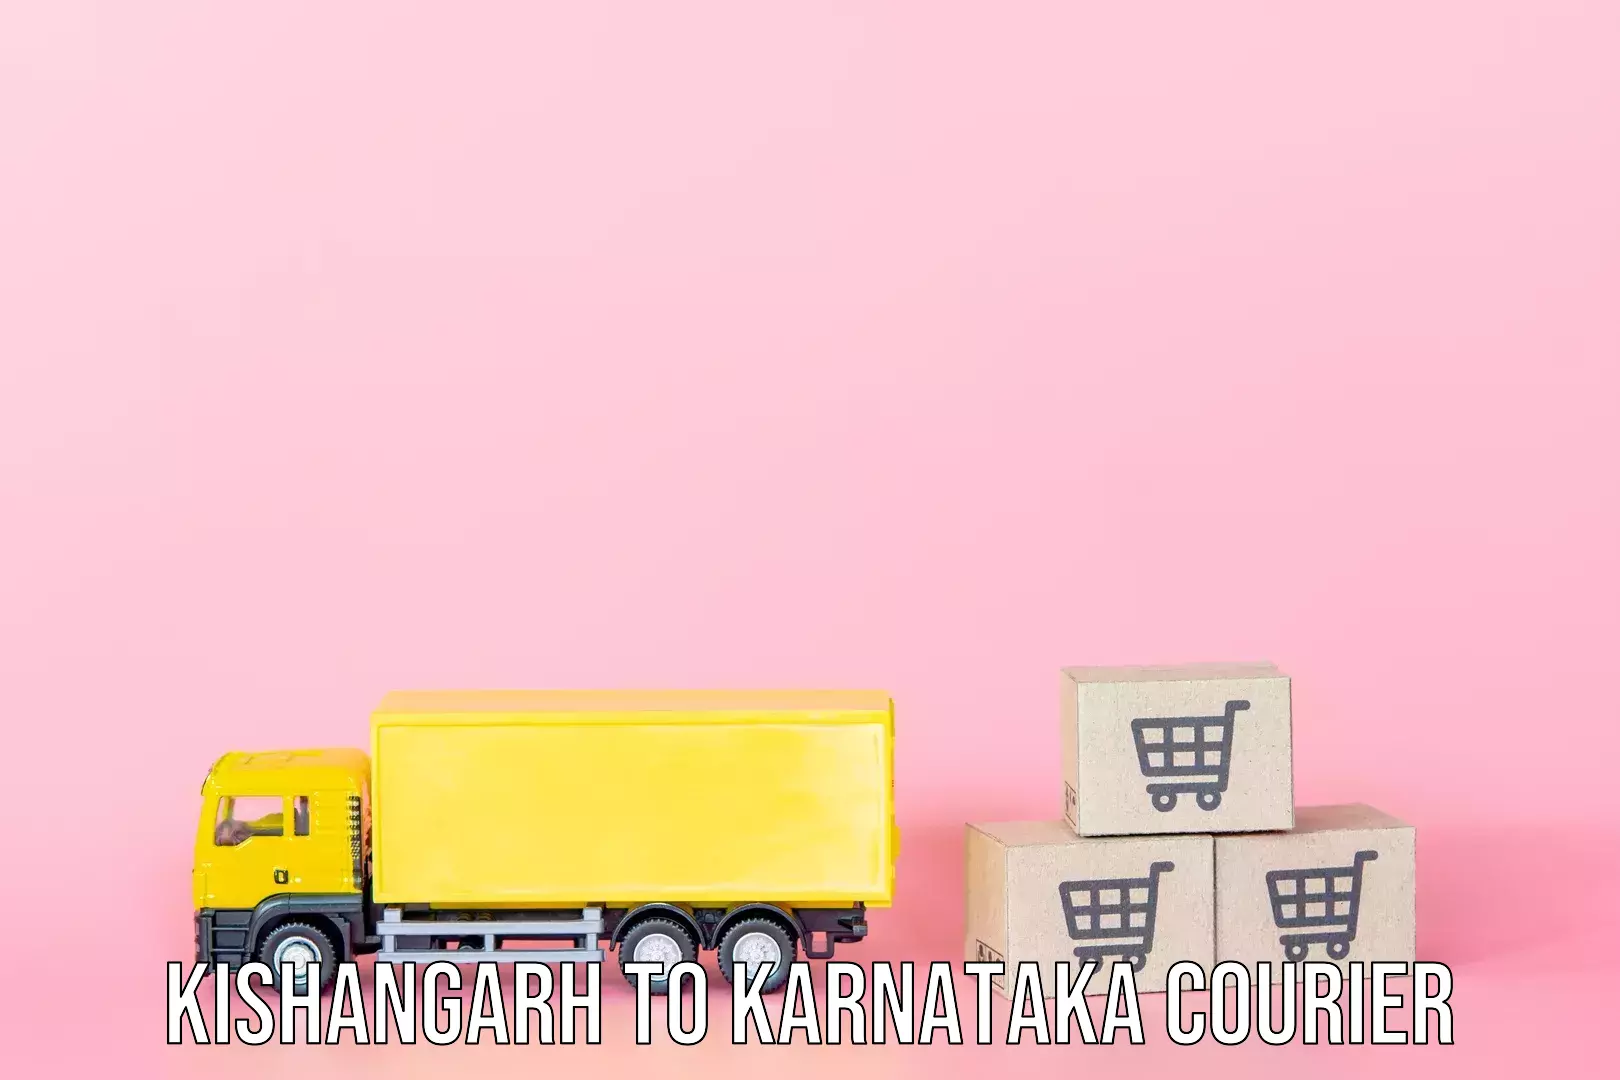 Luggage delivery network Kishangarh to Karnataka